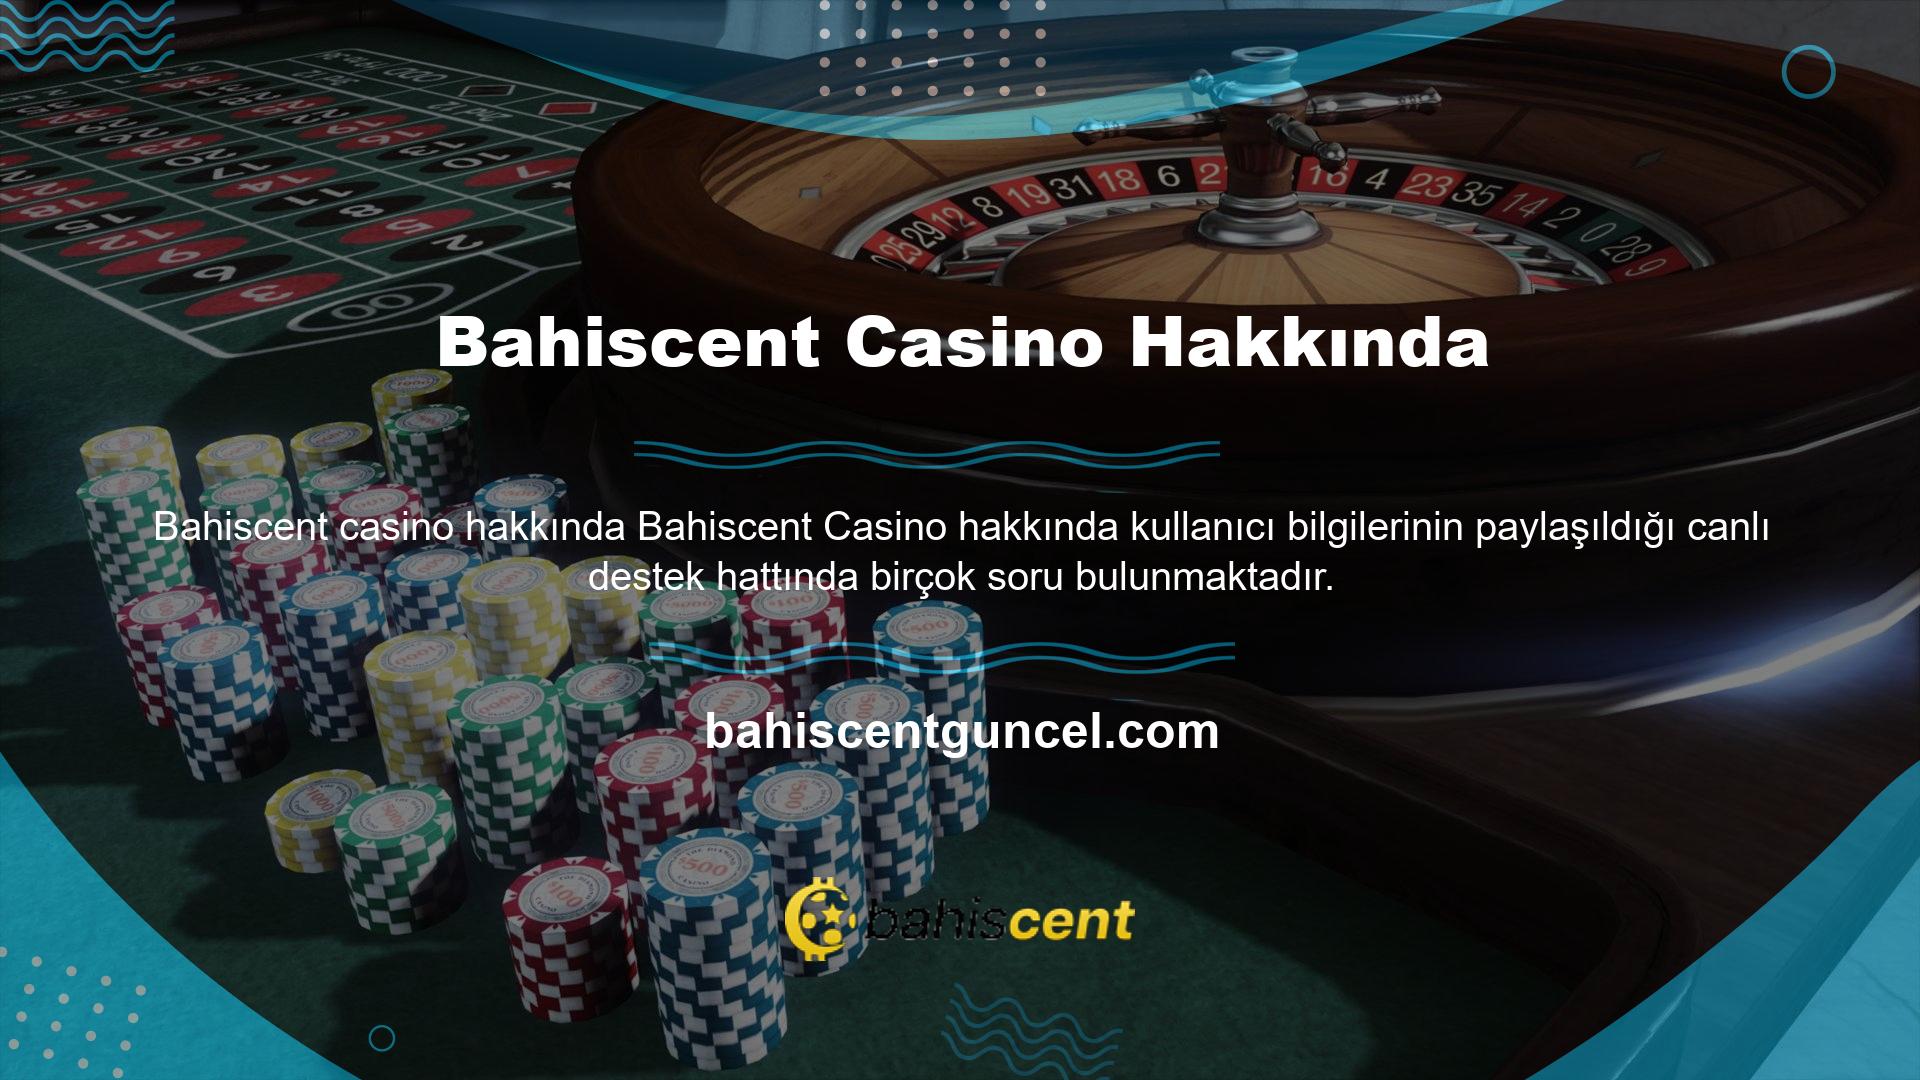 Bu soruları gördüklerinde Bahiscent casino sitesinin kullanıcı bilgilerini koruyup korumadığını öğrenmek istediler